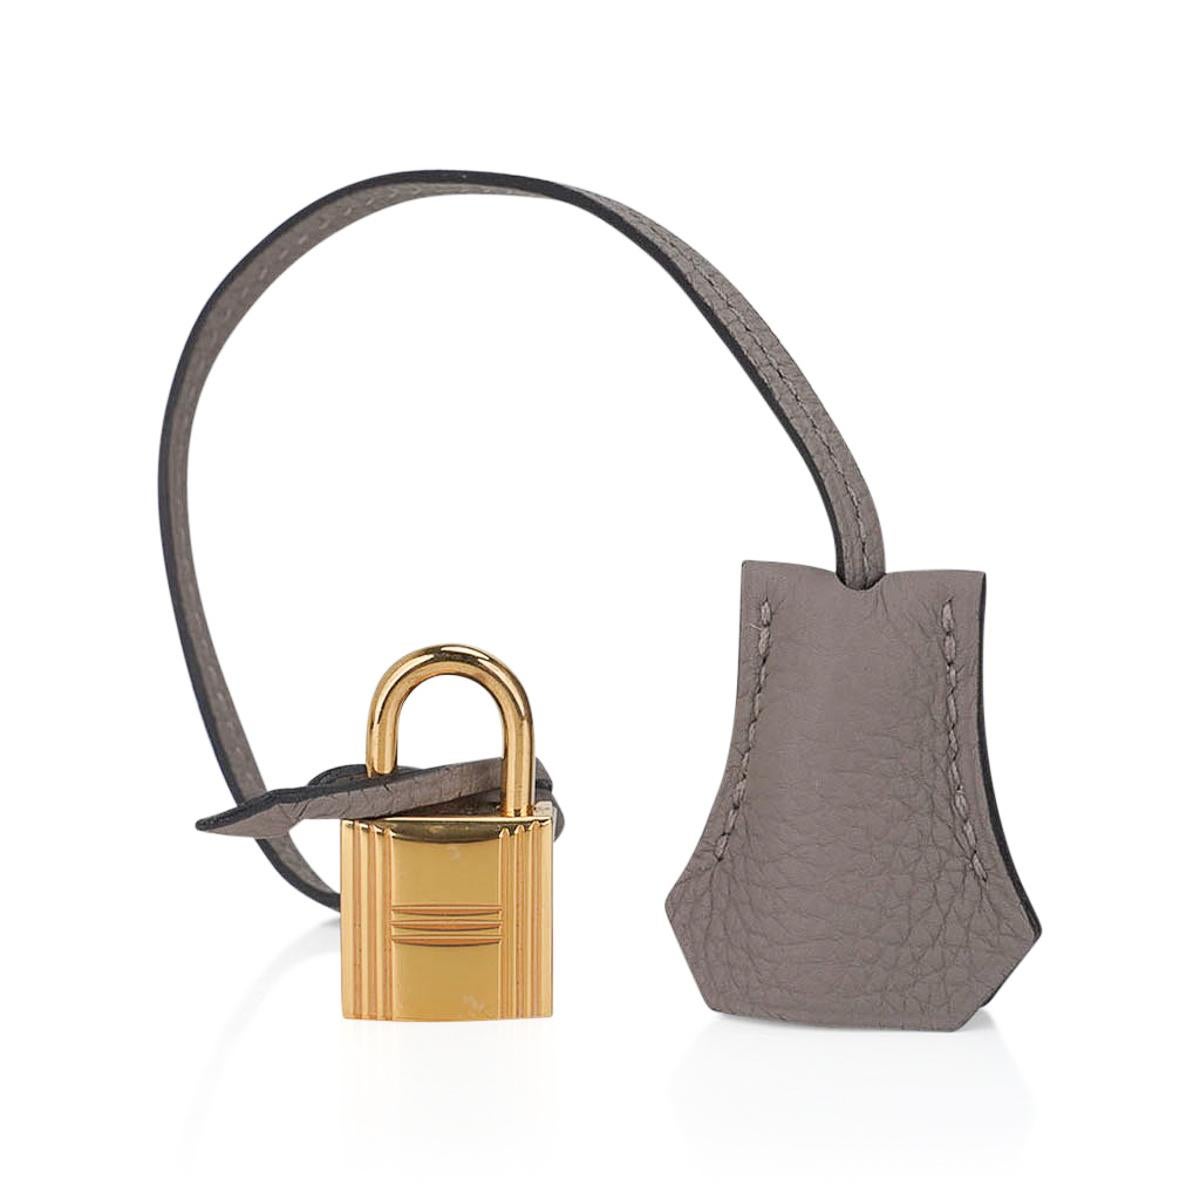 Hermes Birkin 35 Gris Asphalte Bag Gold Hardware Togo Leather 3